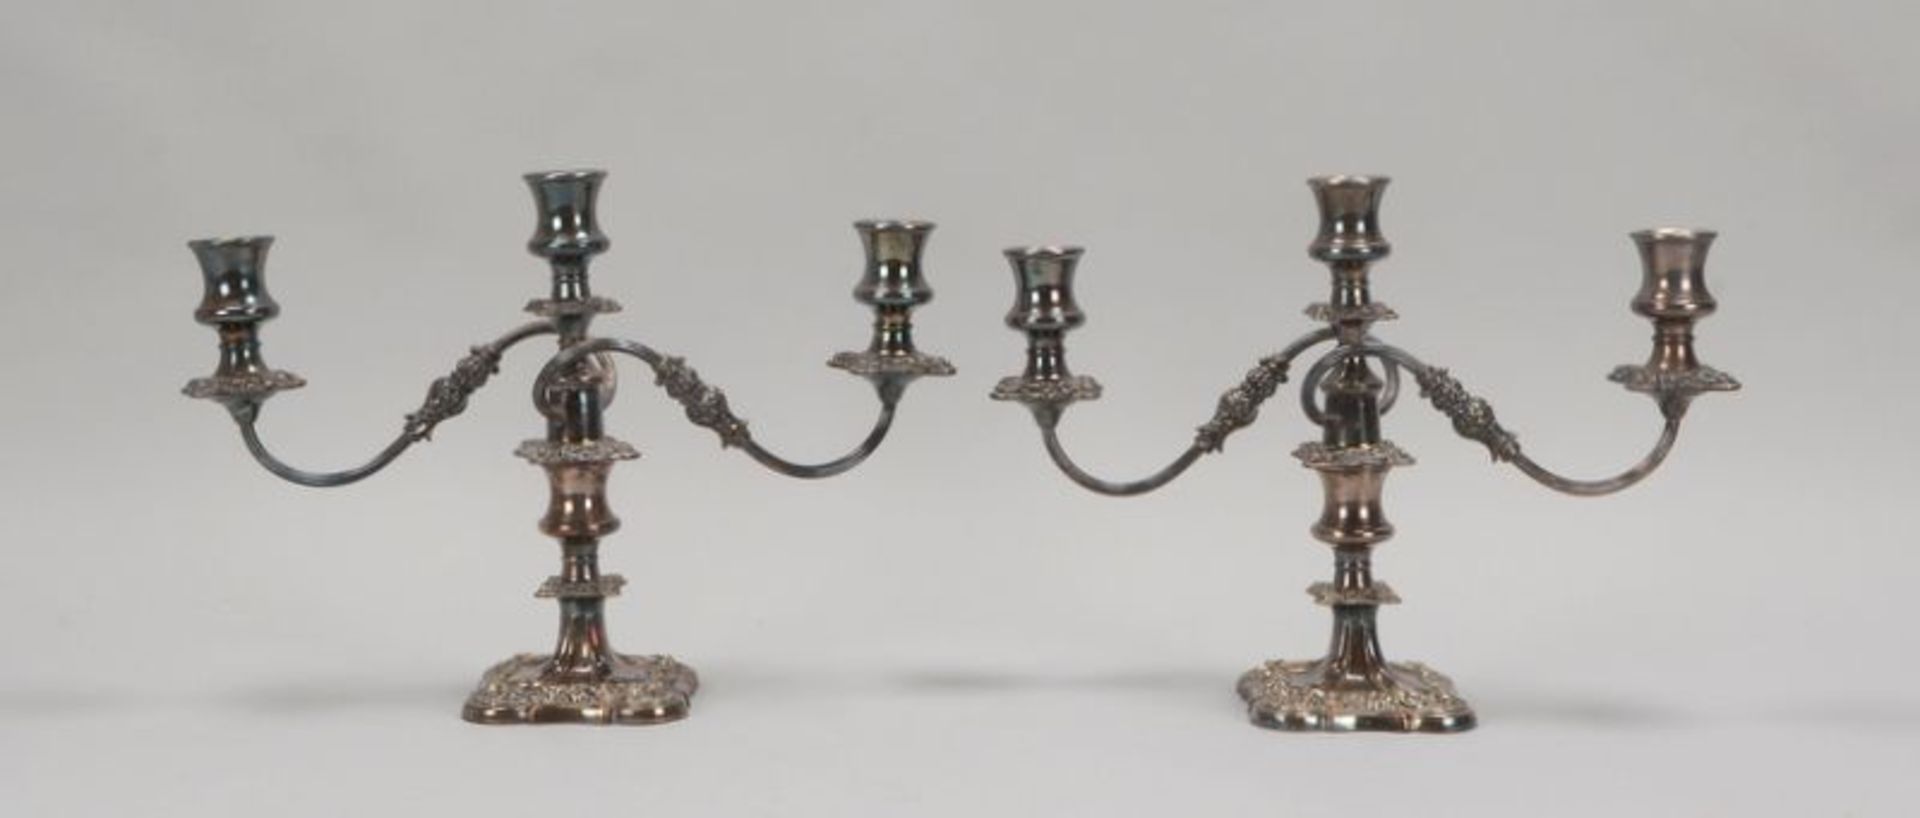 Paar Tischkerzenleuchter (England), 3-flammig, versilbert, 2-teilig, mit reichem floralem Reliefdeko - Image 2 of 4